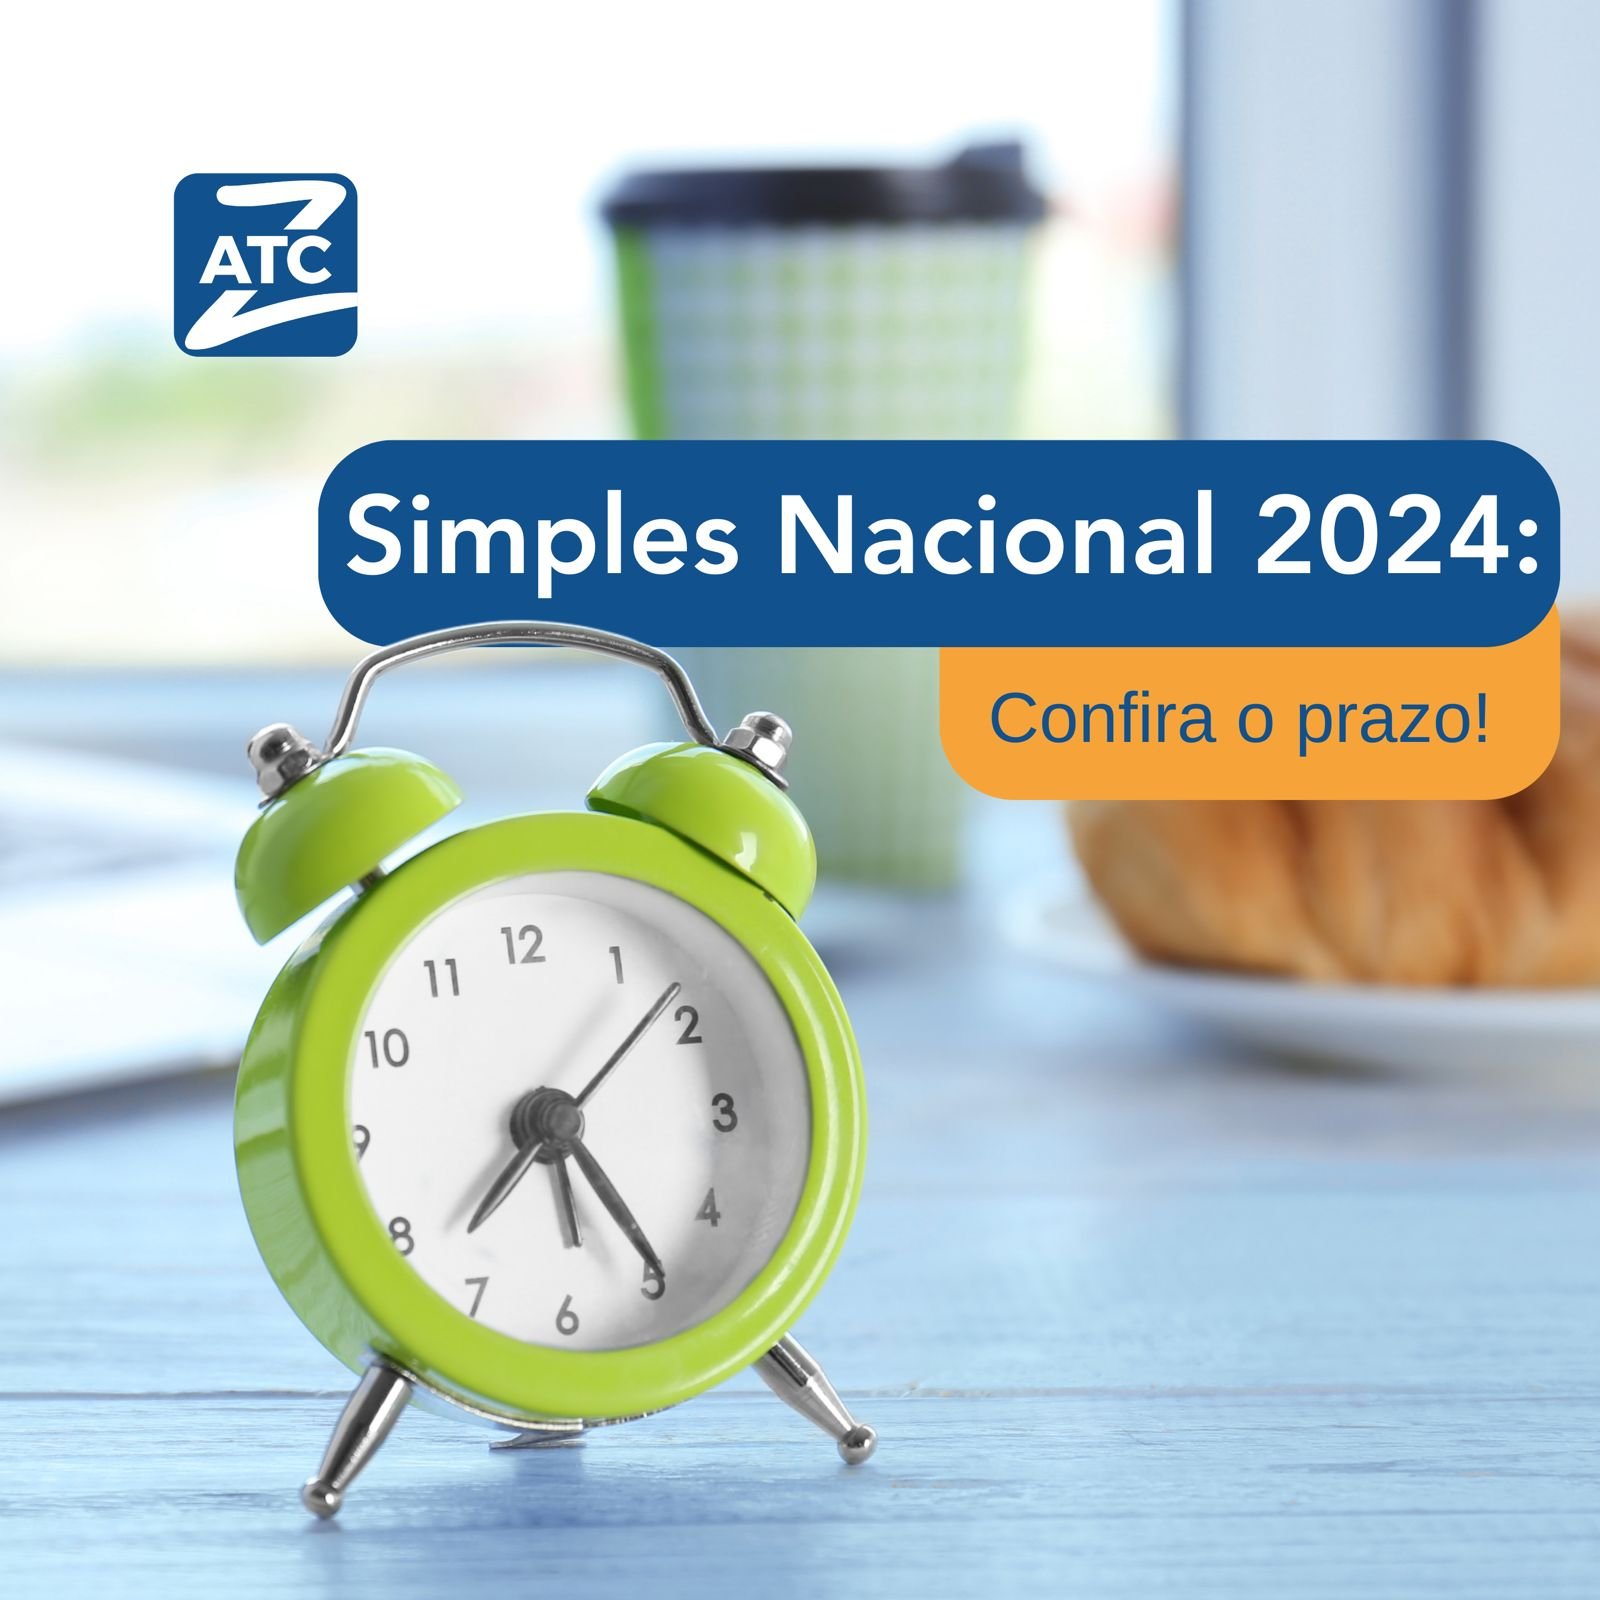 Simples Nacional 2024: Confira o prazo